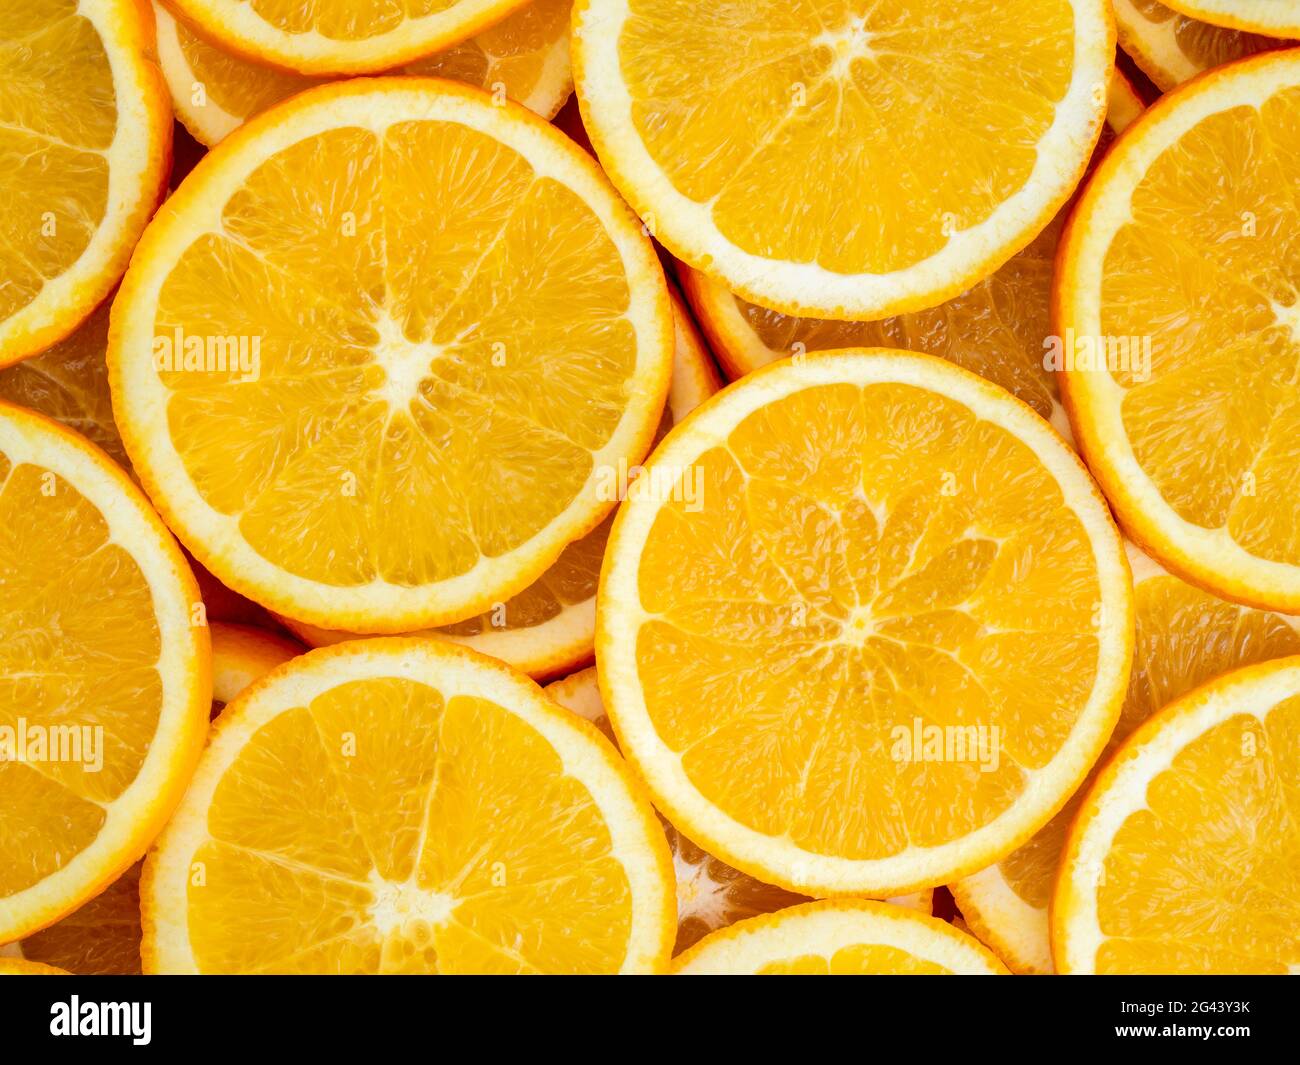 Full frame of orange slices Stock Photo